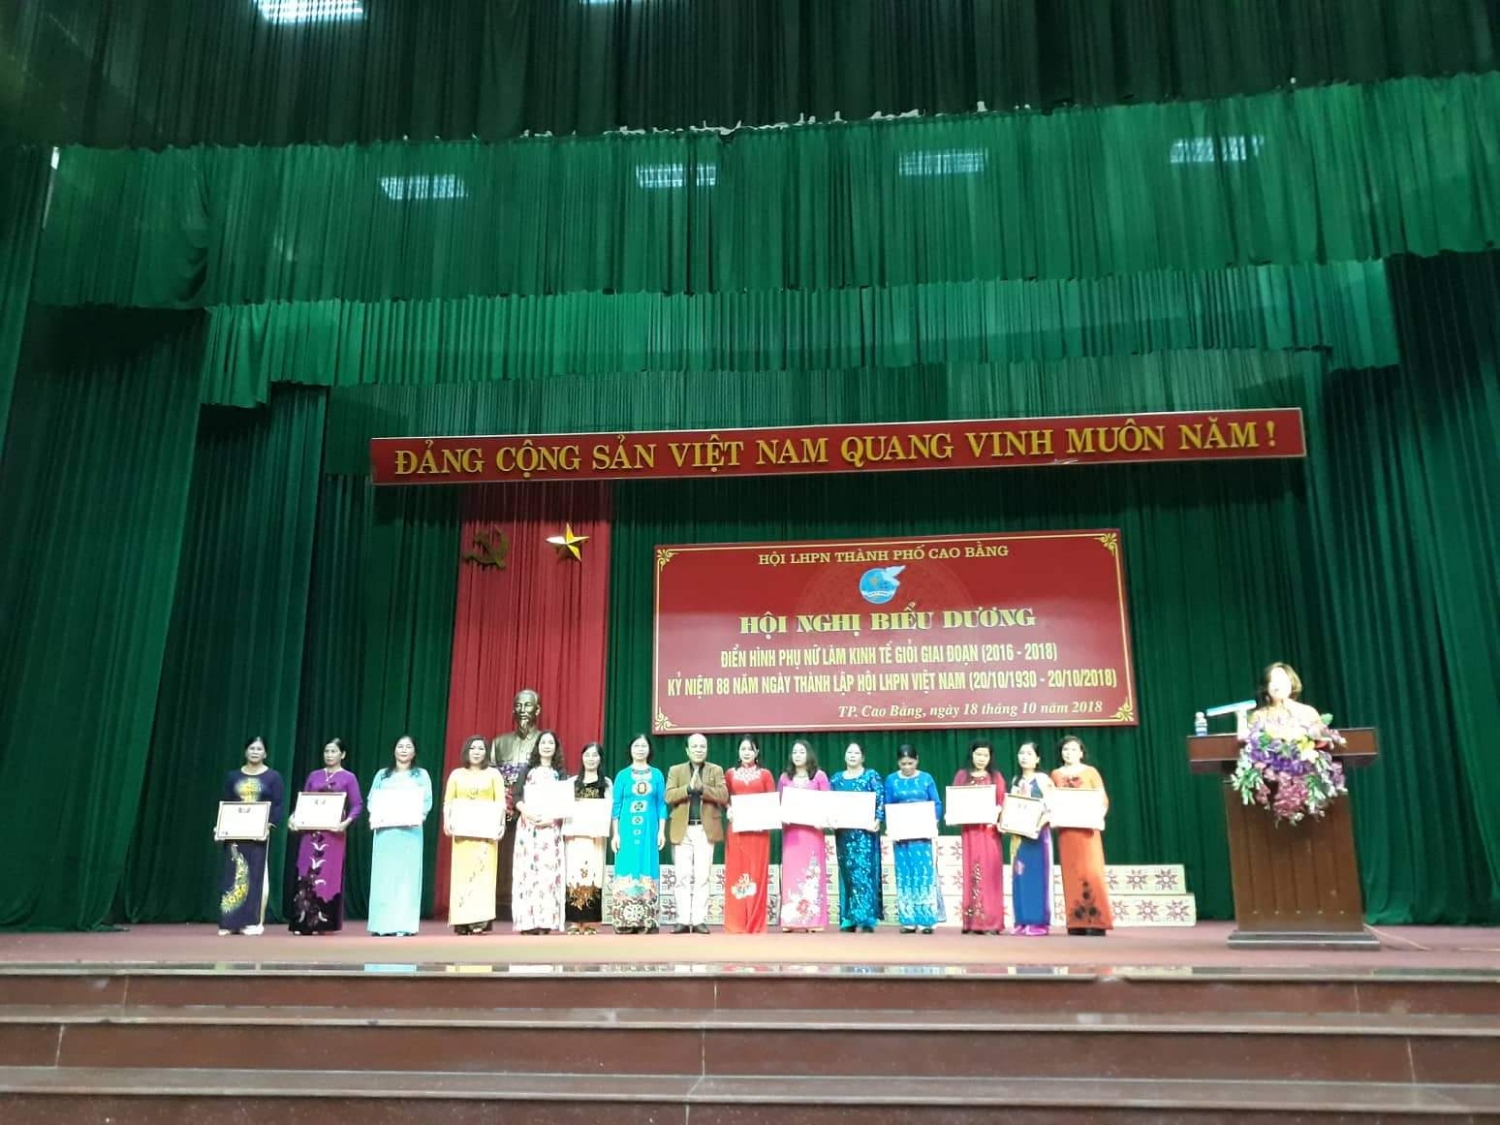 Hội LHPN Thành phố Cao Bằng tổ chức Hội nghị biểu dương điển hình phụ nữ làm kinh tế giỏi nhân Kỷ niệm 88 năm ngày thành lập Hội LHPN Việt Nam.